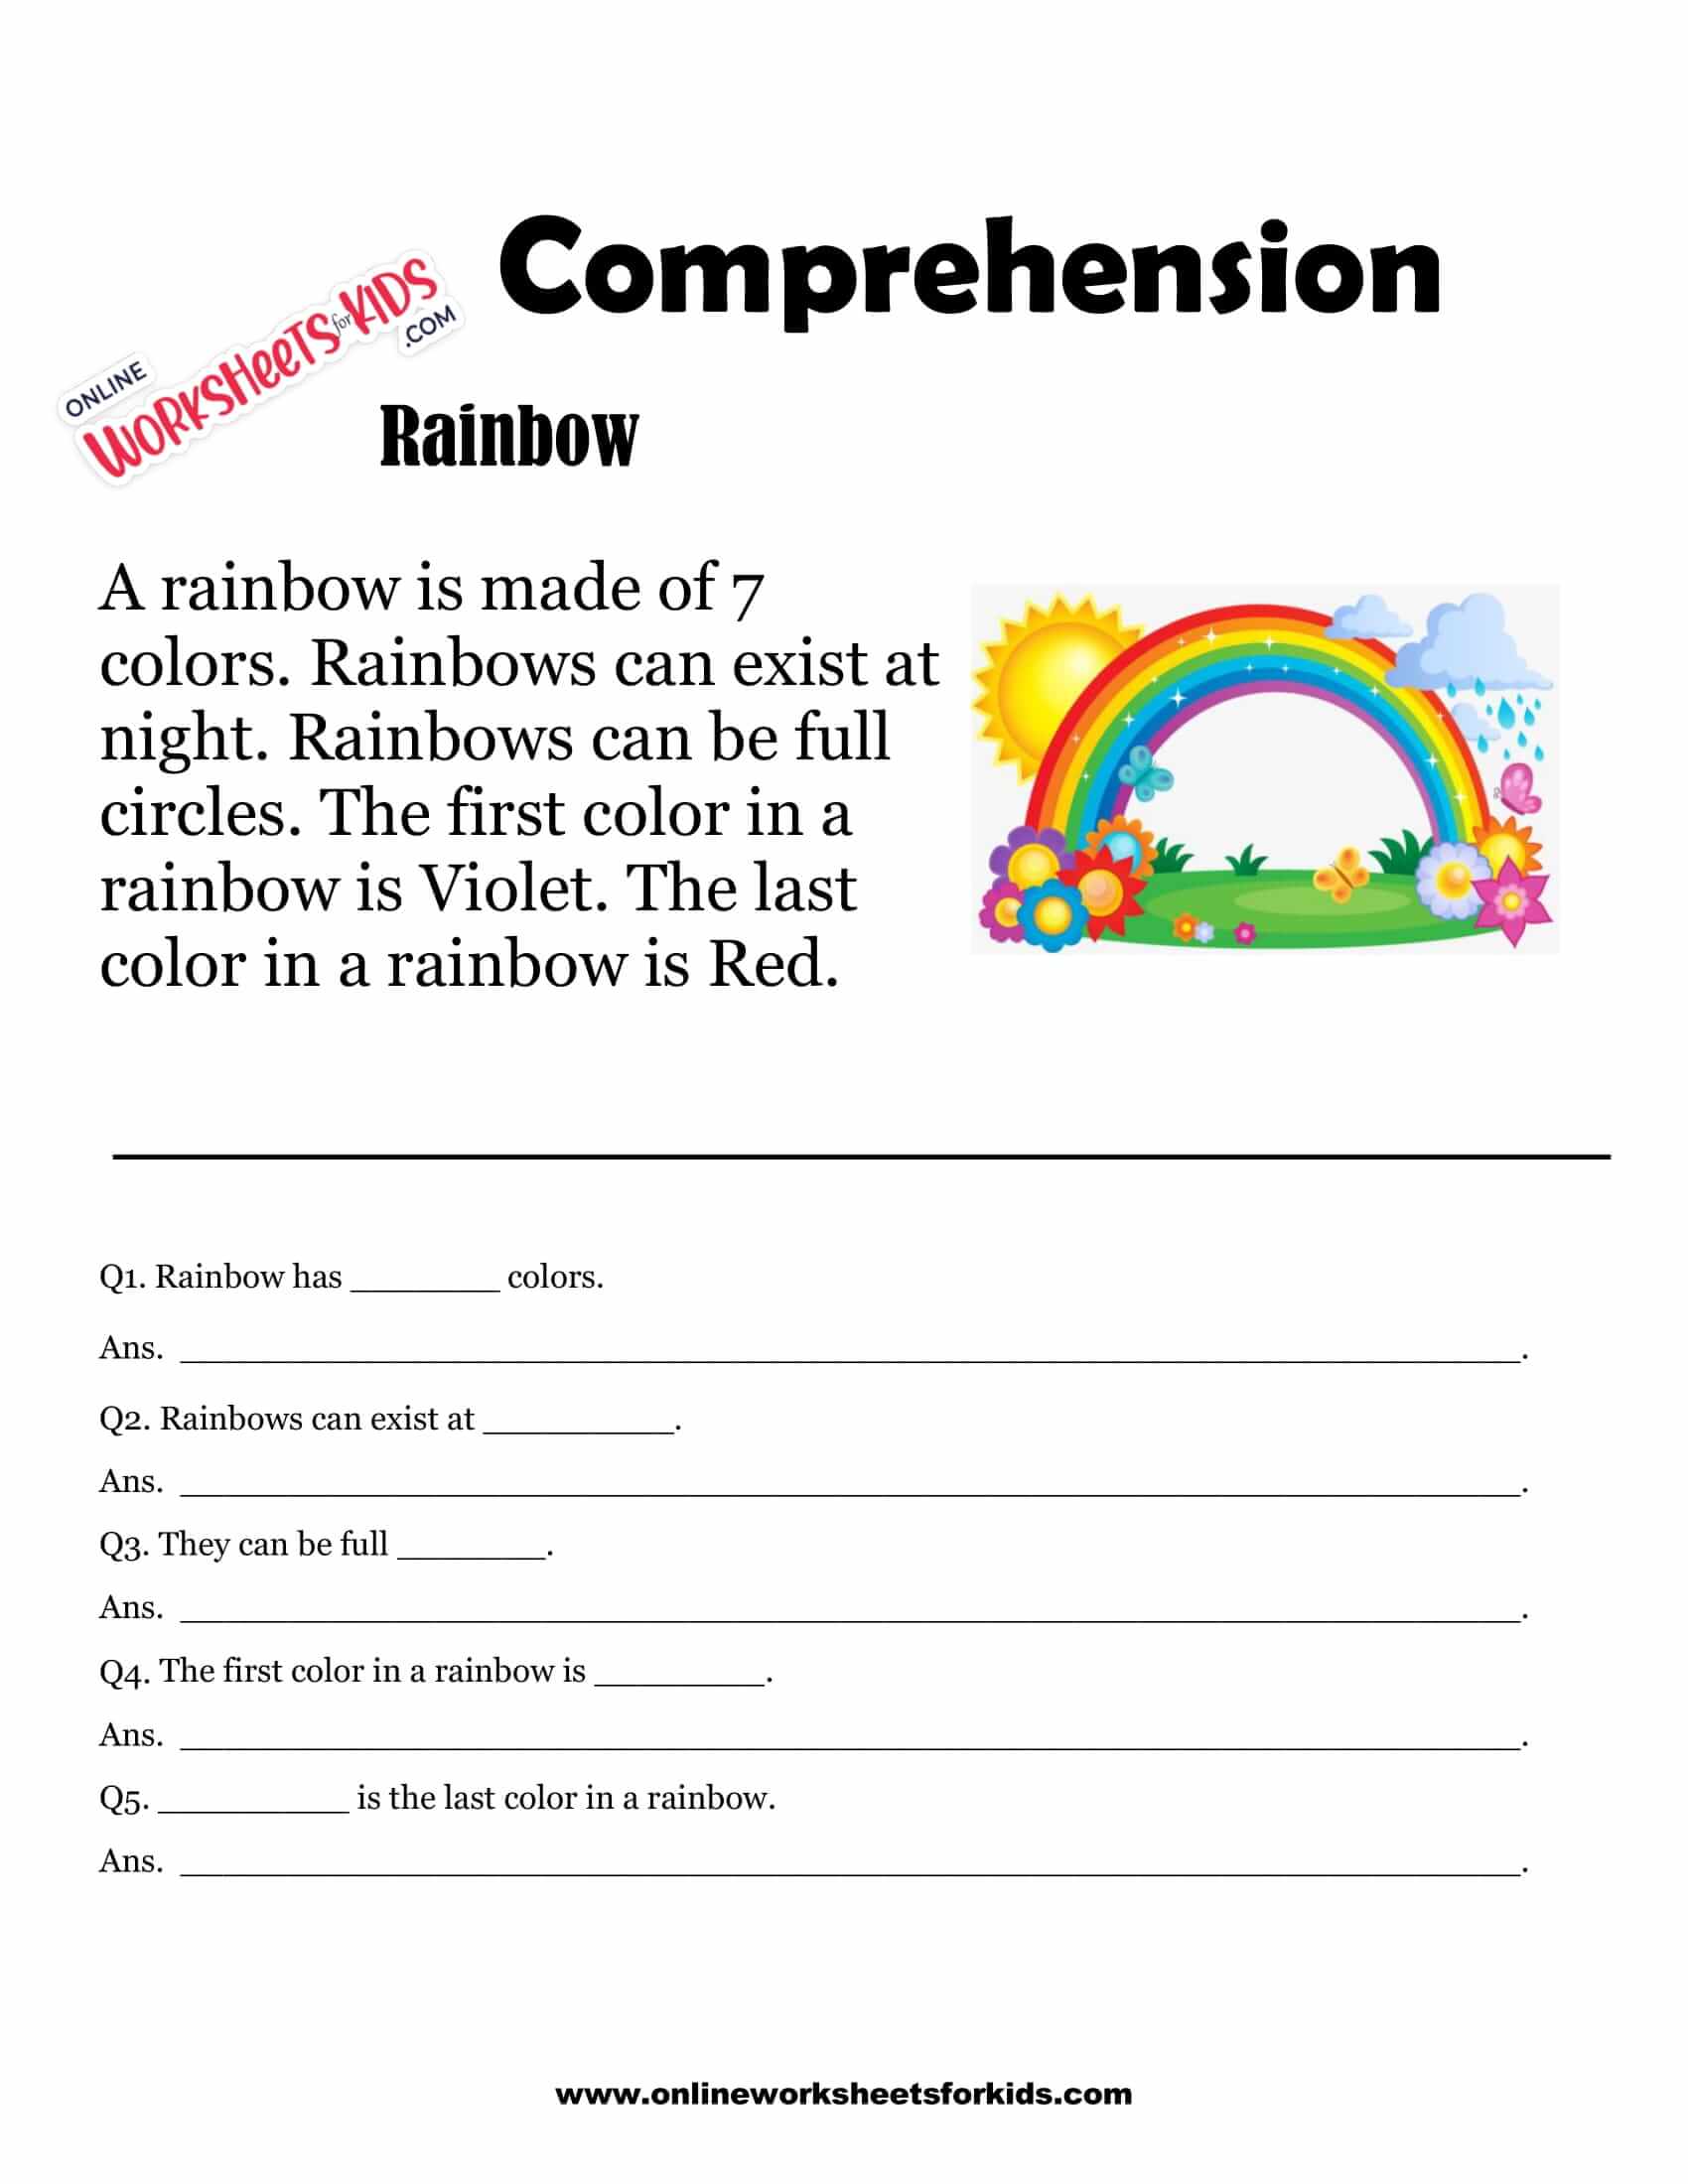 comprehension-check-worksheets